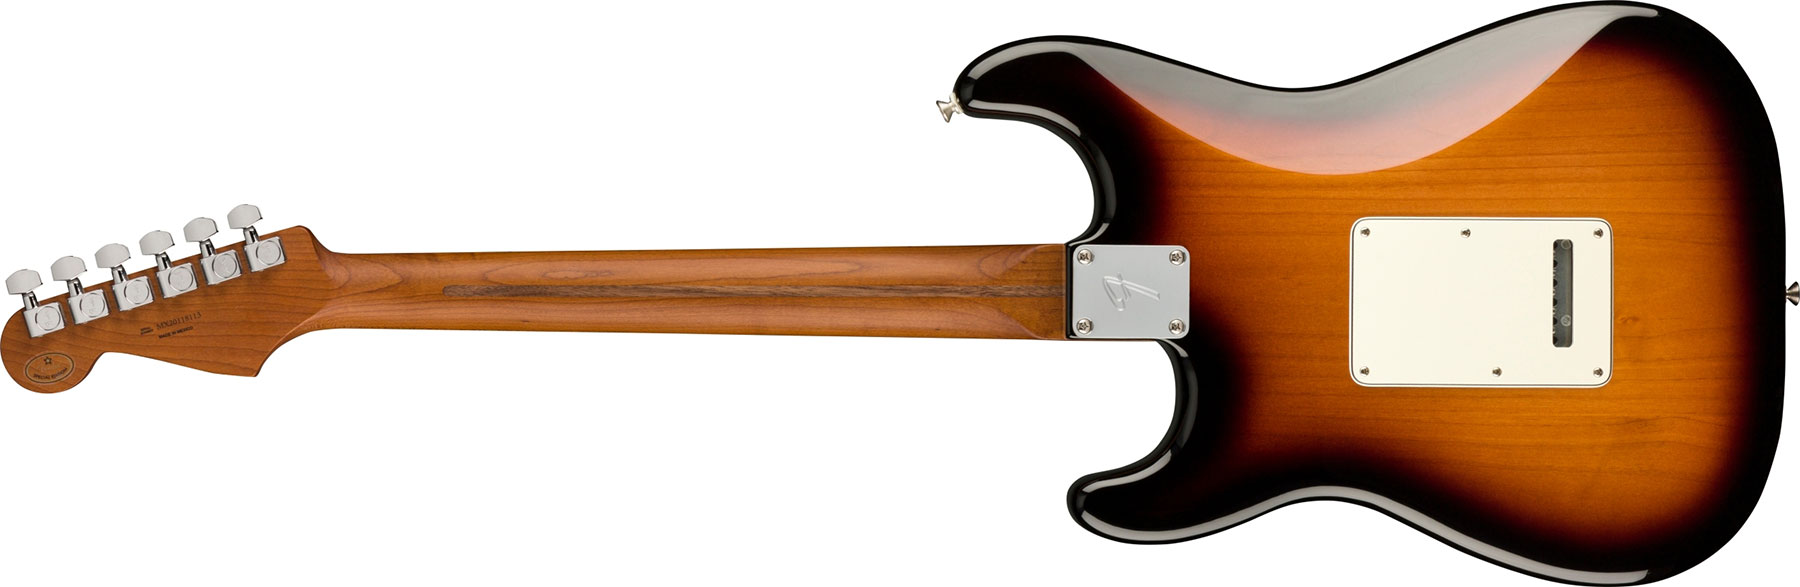 Fender Strat Player 1959 Texas Special Ltd Mex 3s Mn - 2-color Sunburst - Guitare Électrique Forme Str - Variation 1